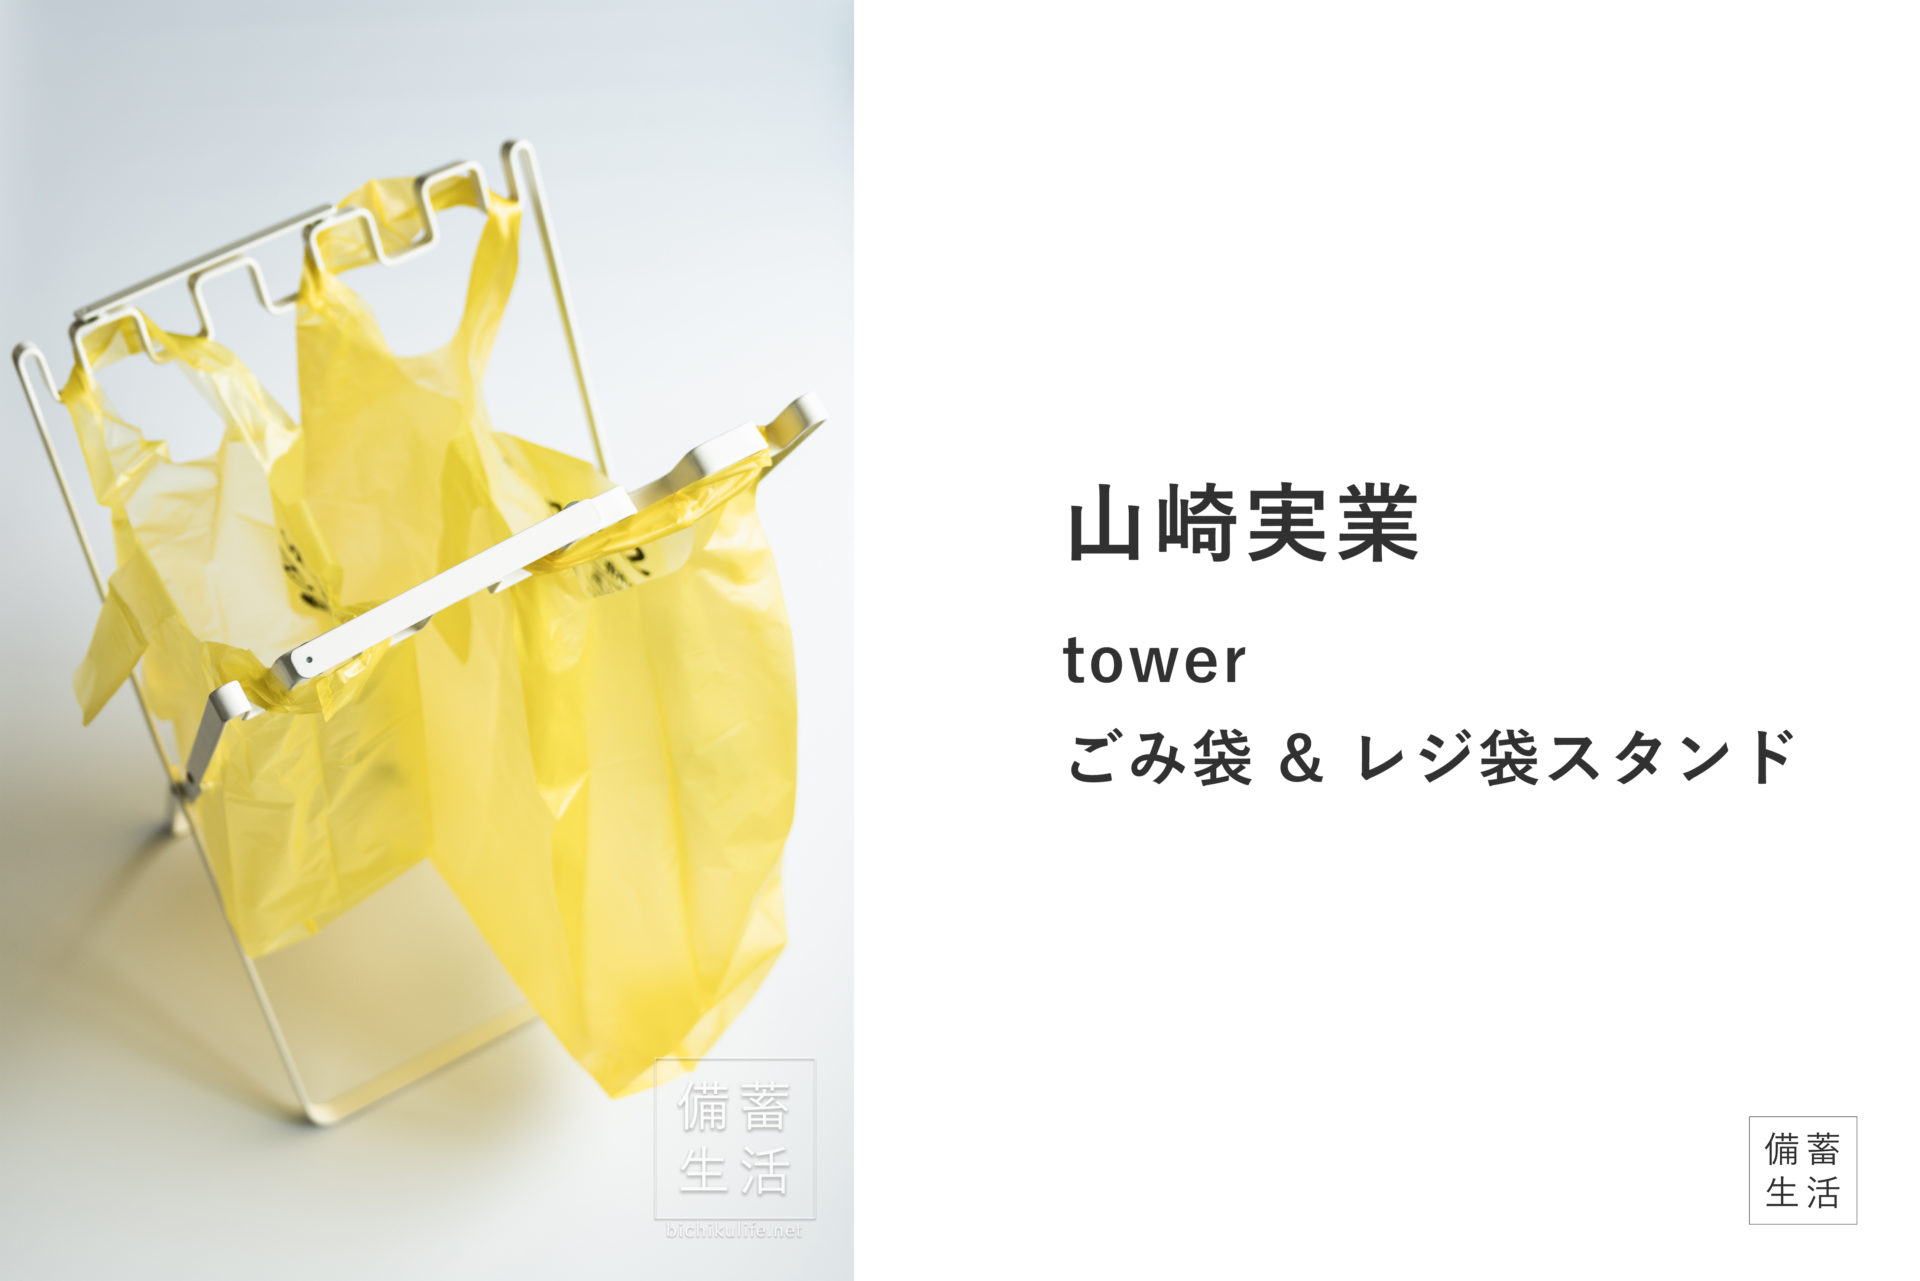 山崎実業 ごみ袋レジ袋スタンド tower 7908 | 備蓄生活